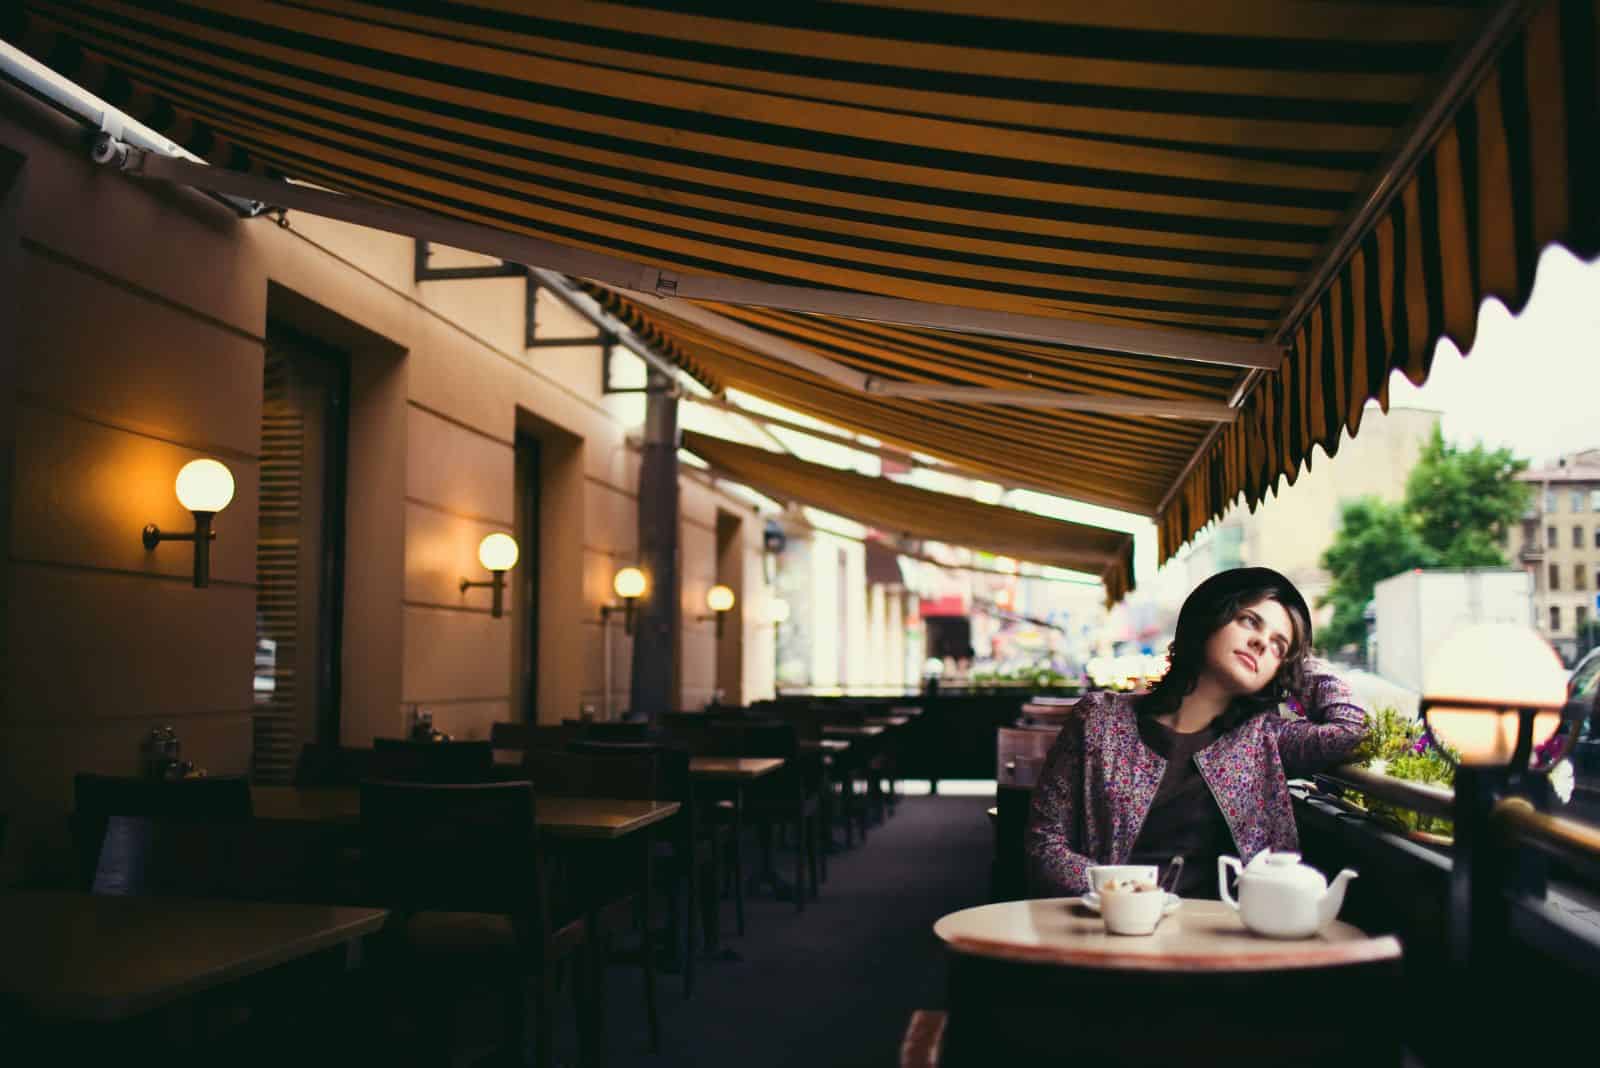 Ein imaginäres Mädchen mit Hut auf dem Kopf sitzt an einem Tisch in einem Café